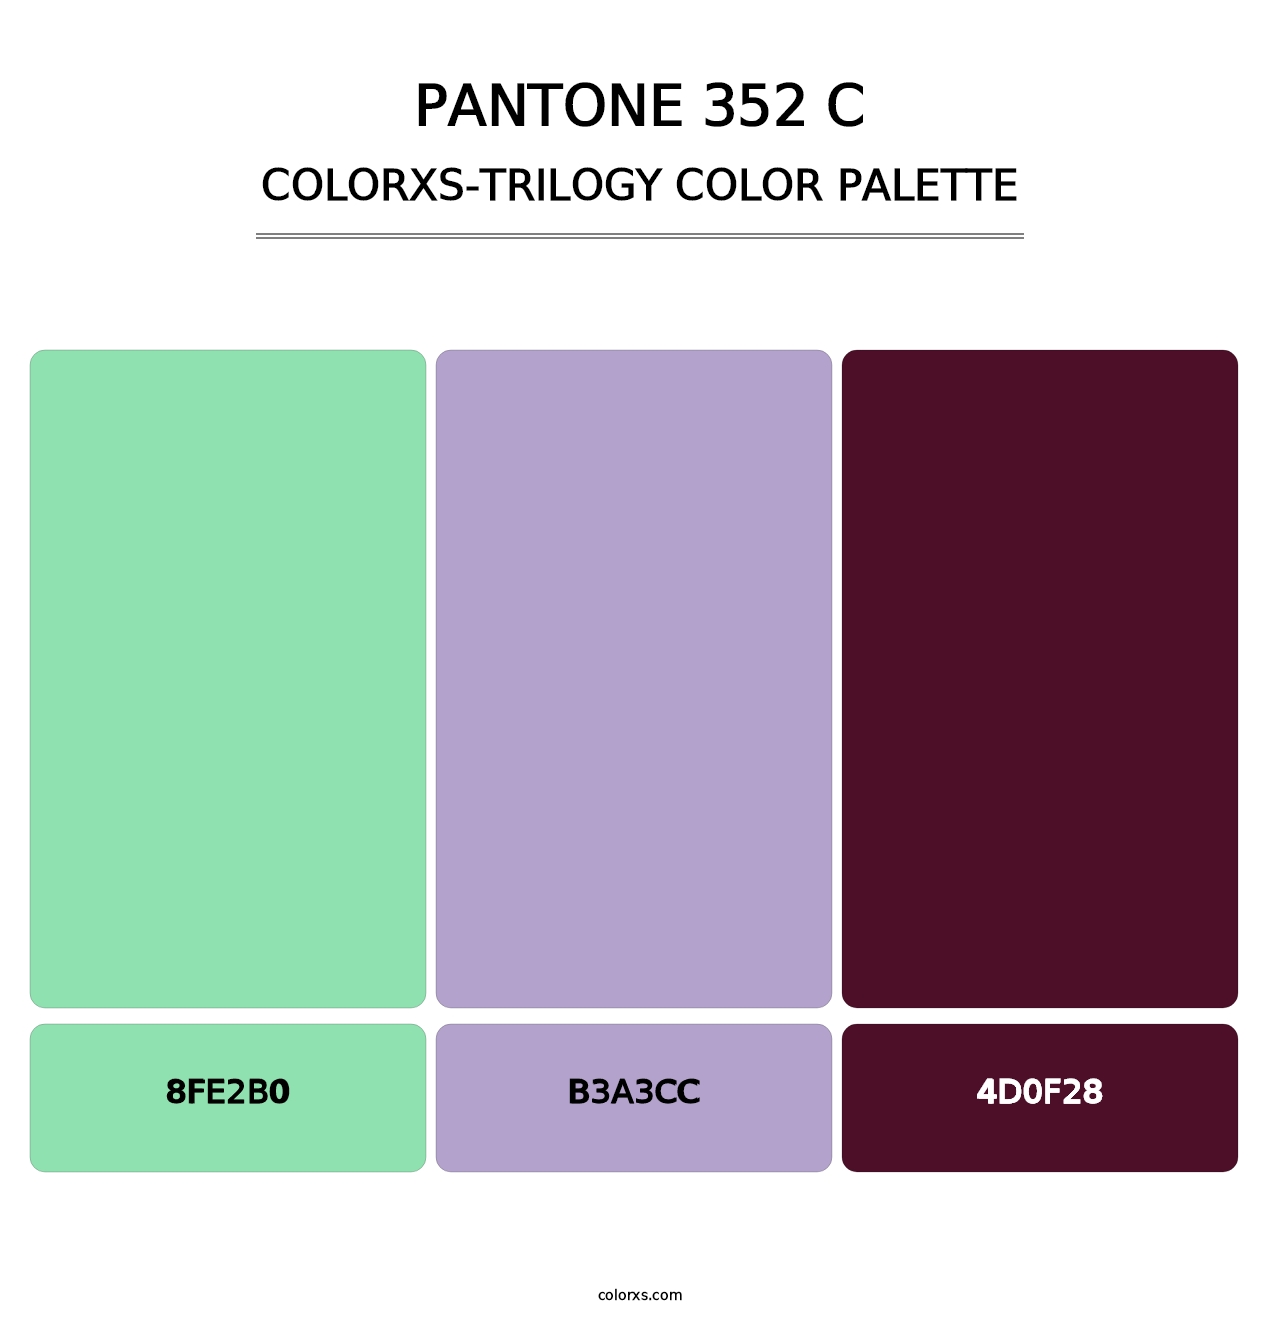 PANTONE 352 C - Colorxs Trilogy Palette